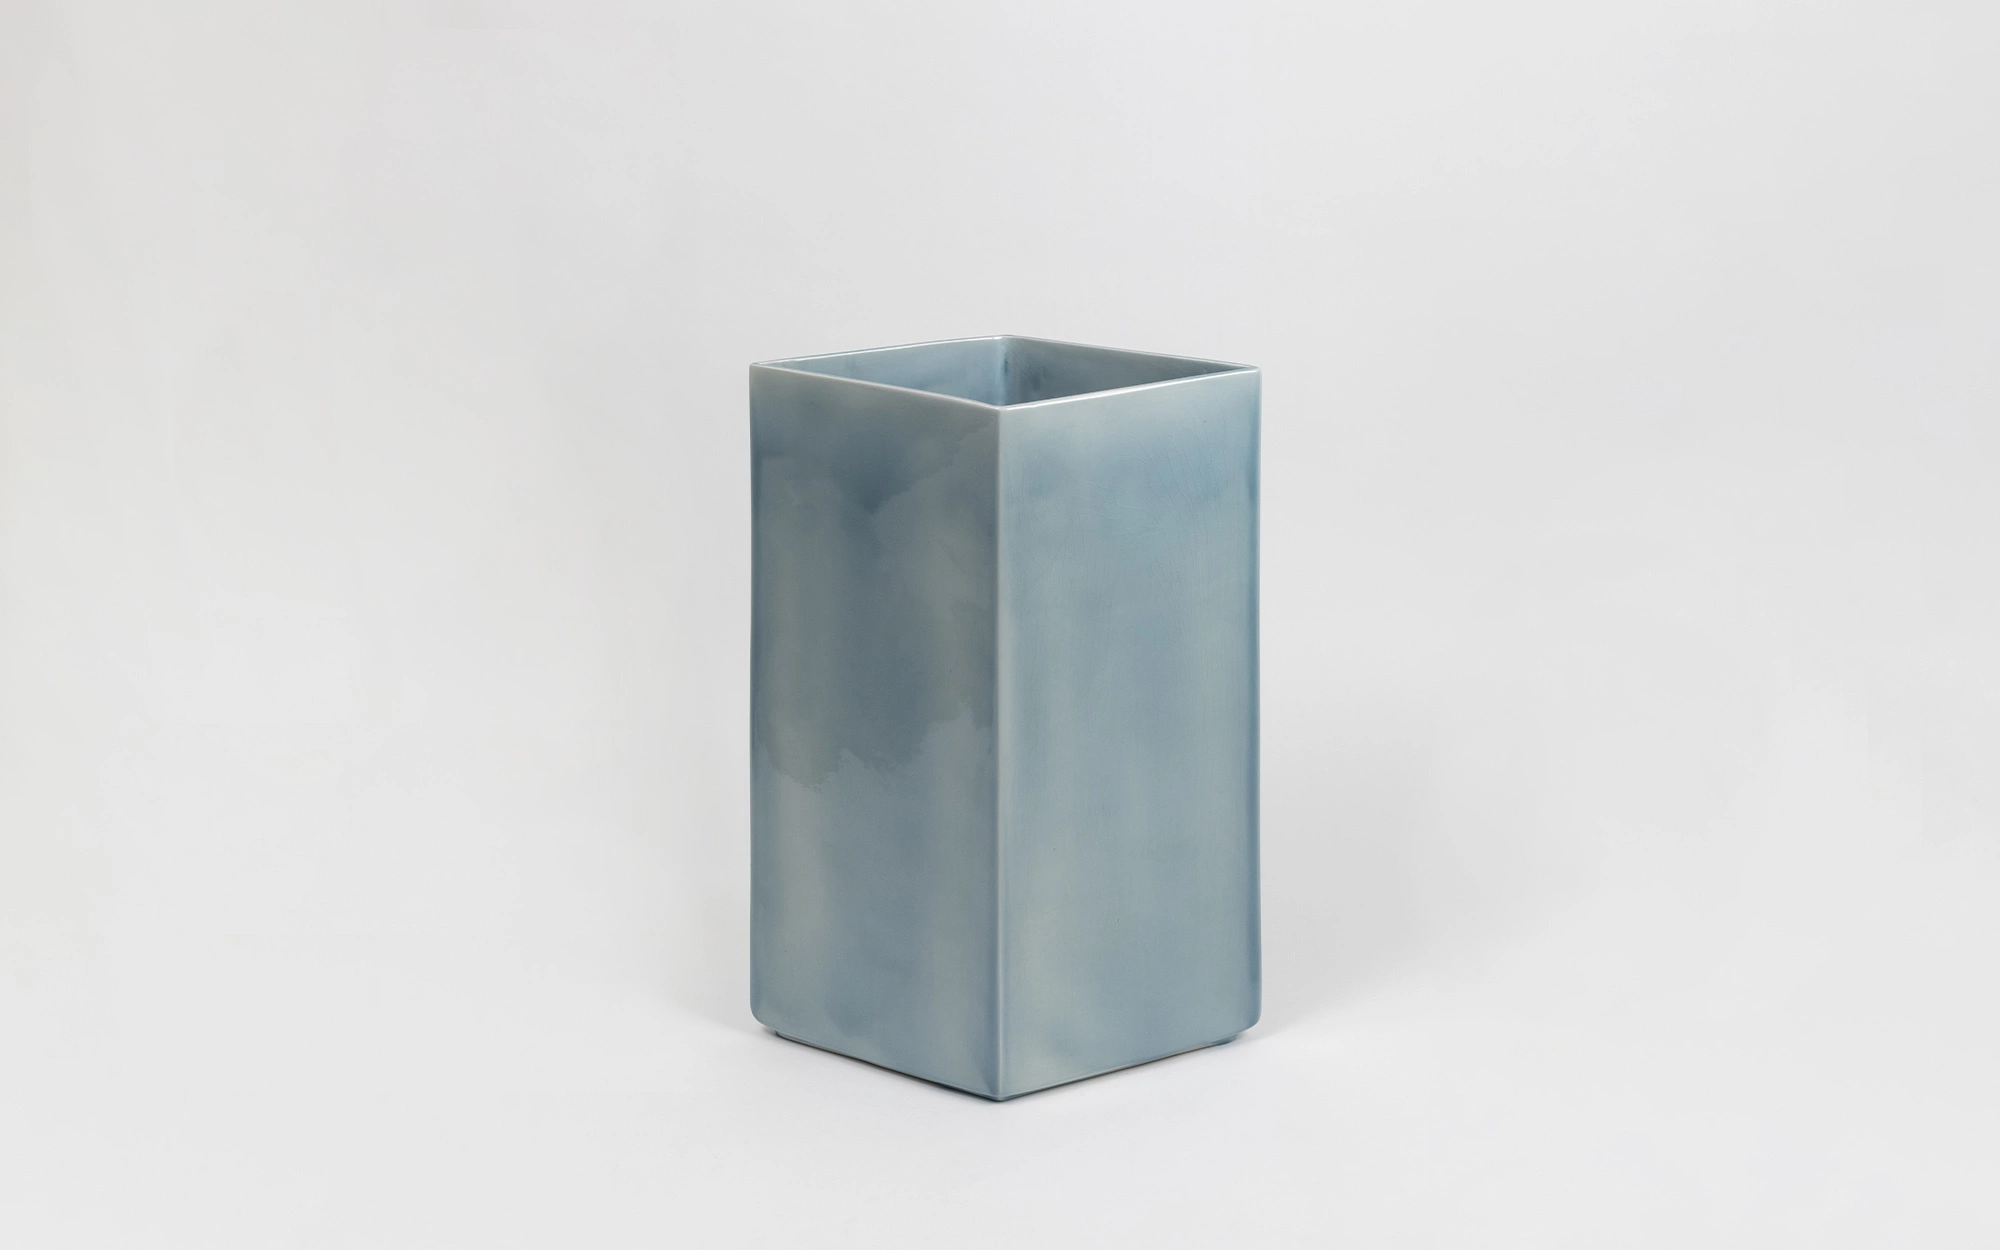 Vase Losange 67 blue - Ronan & Erwan Bouroullec - Coffee table - Galerie kreo